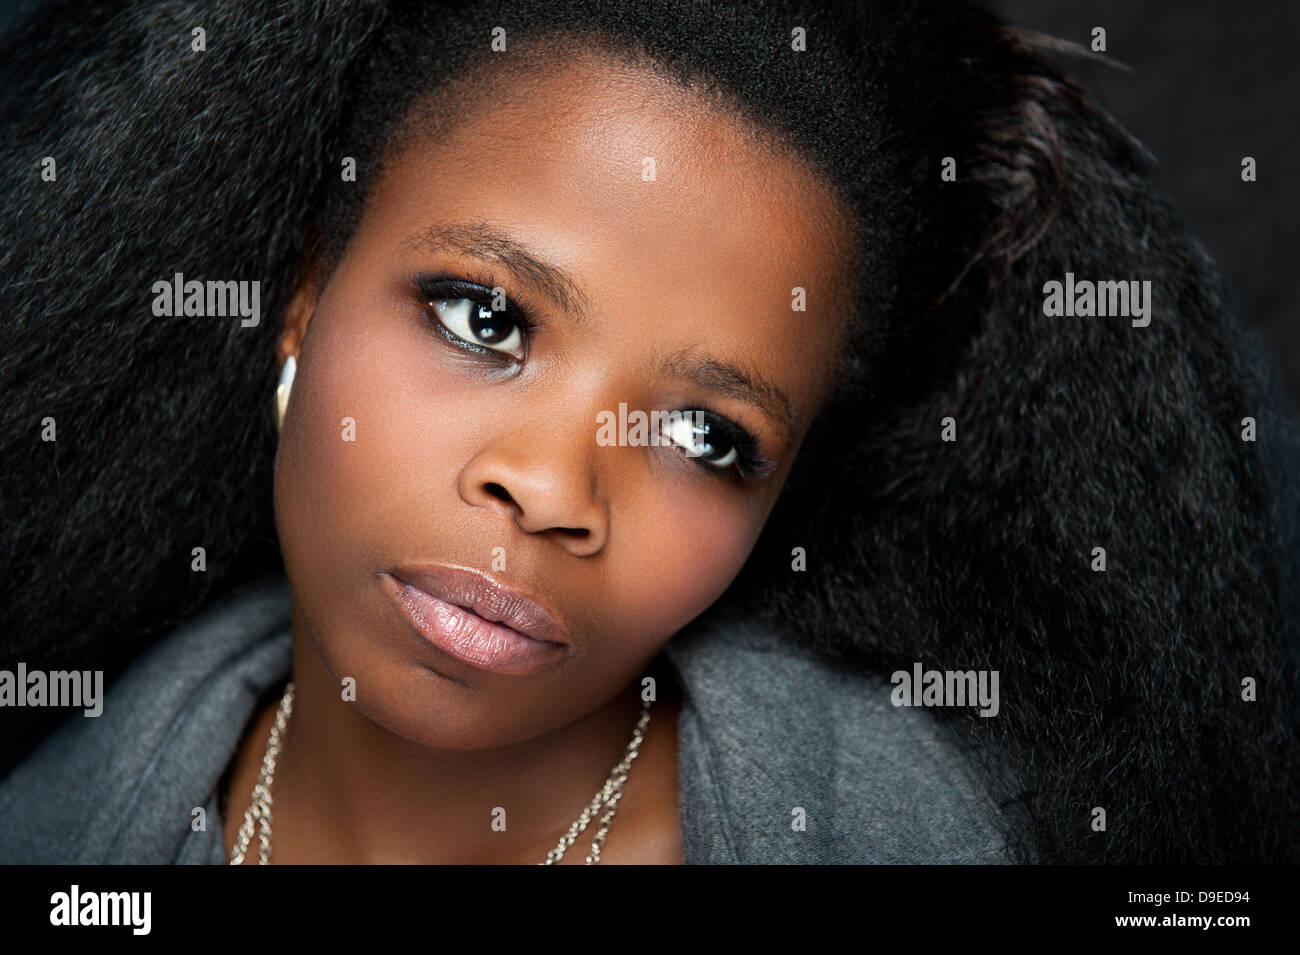 Junge afrikanische Frau mit schönen Afro-Haar und grauen Mantel, ein low-Key Hintergrund Studio gedreht. Dramatische Gesichtsausdruck. Stockfoto